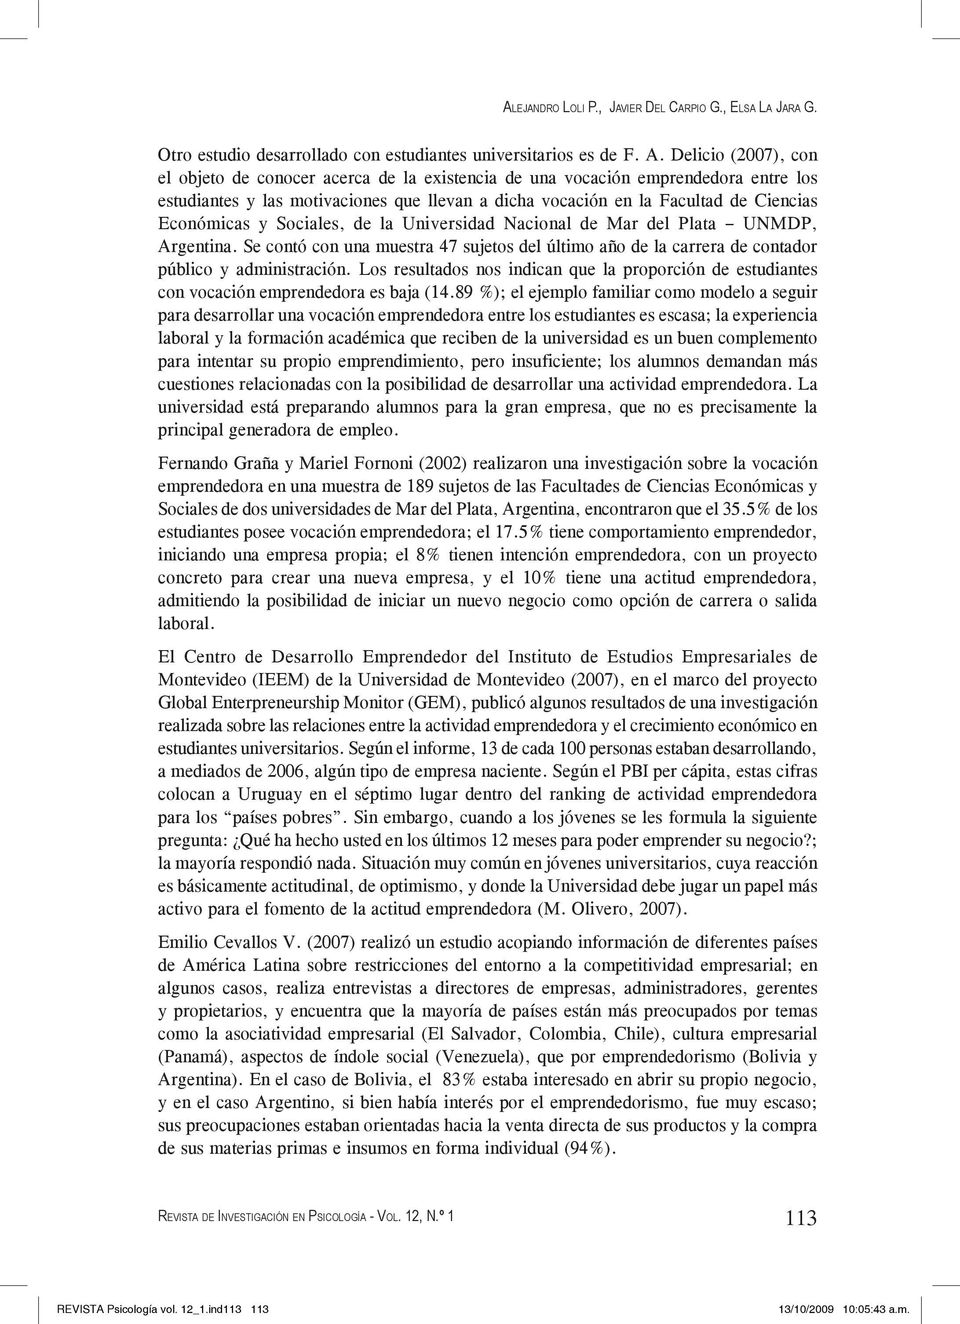 Sociales, de la Univesidad Nacional de Ma del Plata UNMDP, Agentina. Se contó con una muesta 47 sujetos del último año de la caea de contado público y administación.